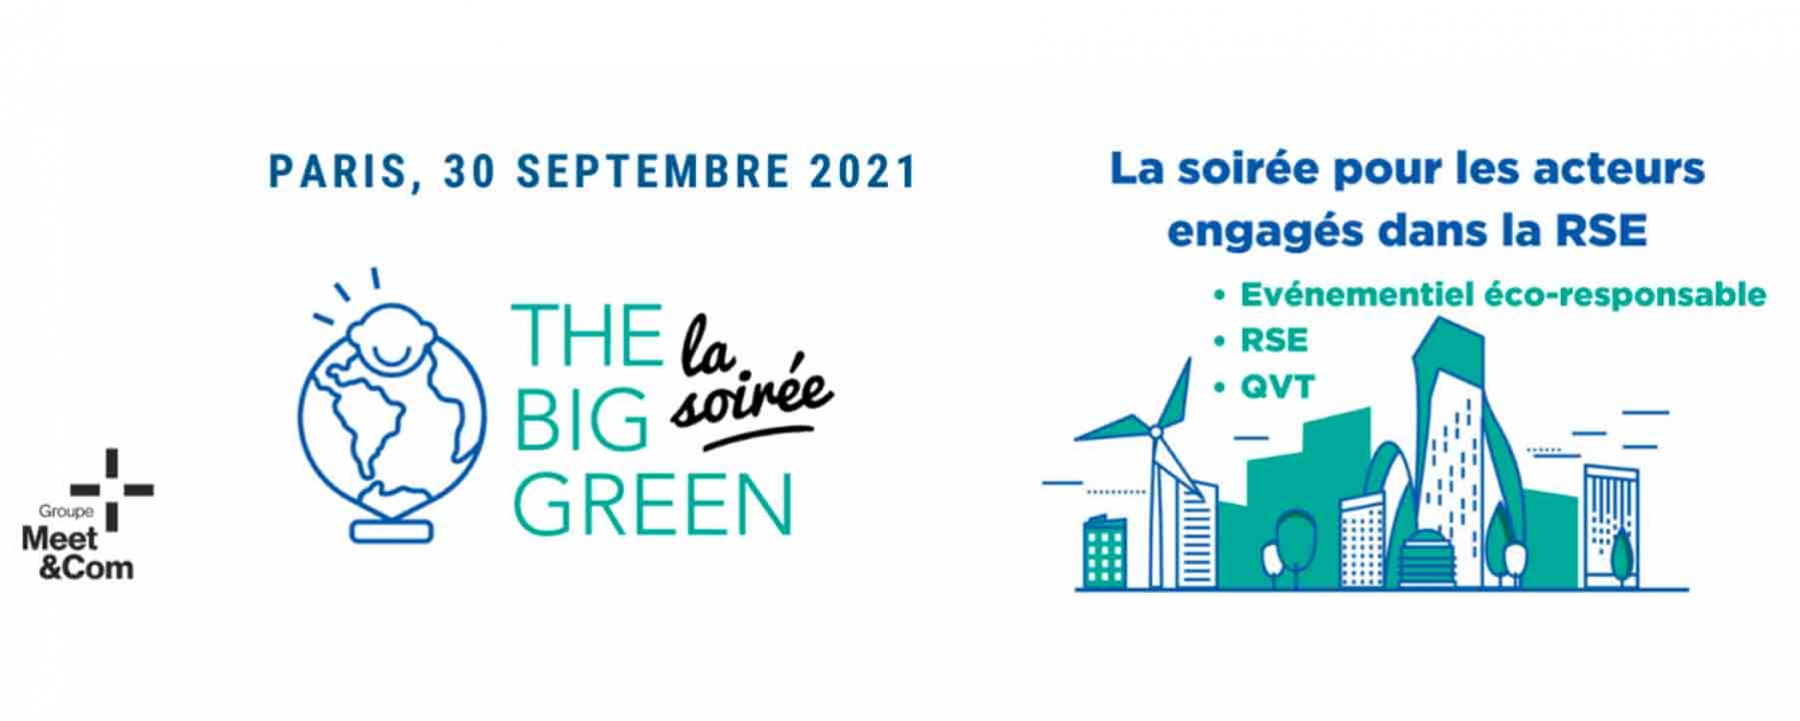 The Big Green, la soirée ! le 30 septembre 2021